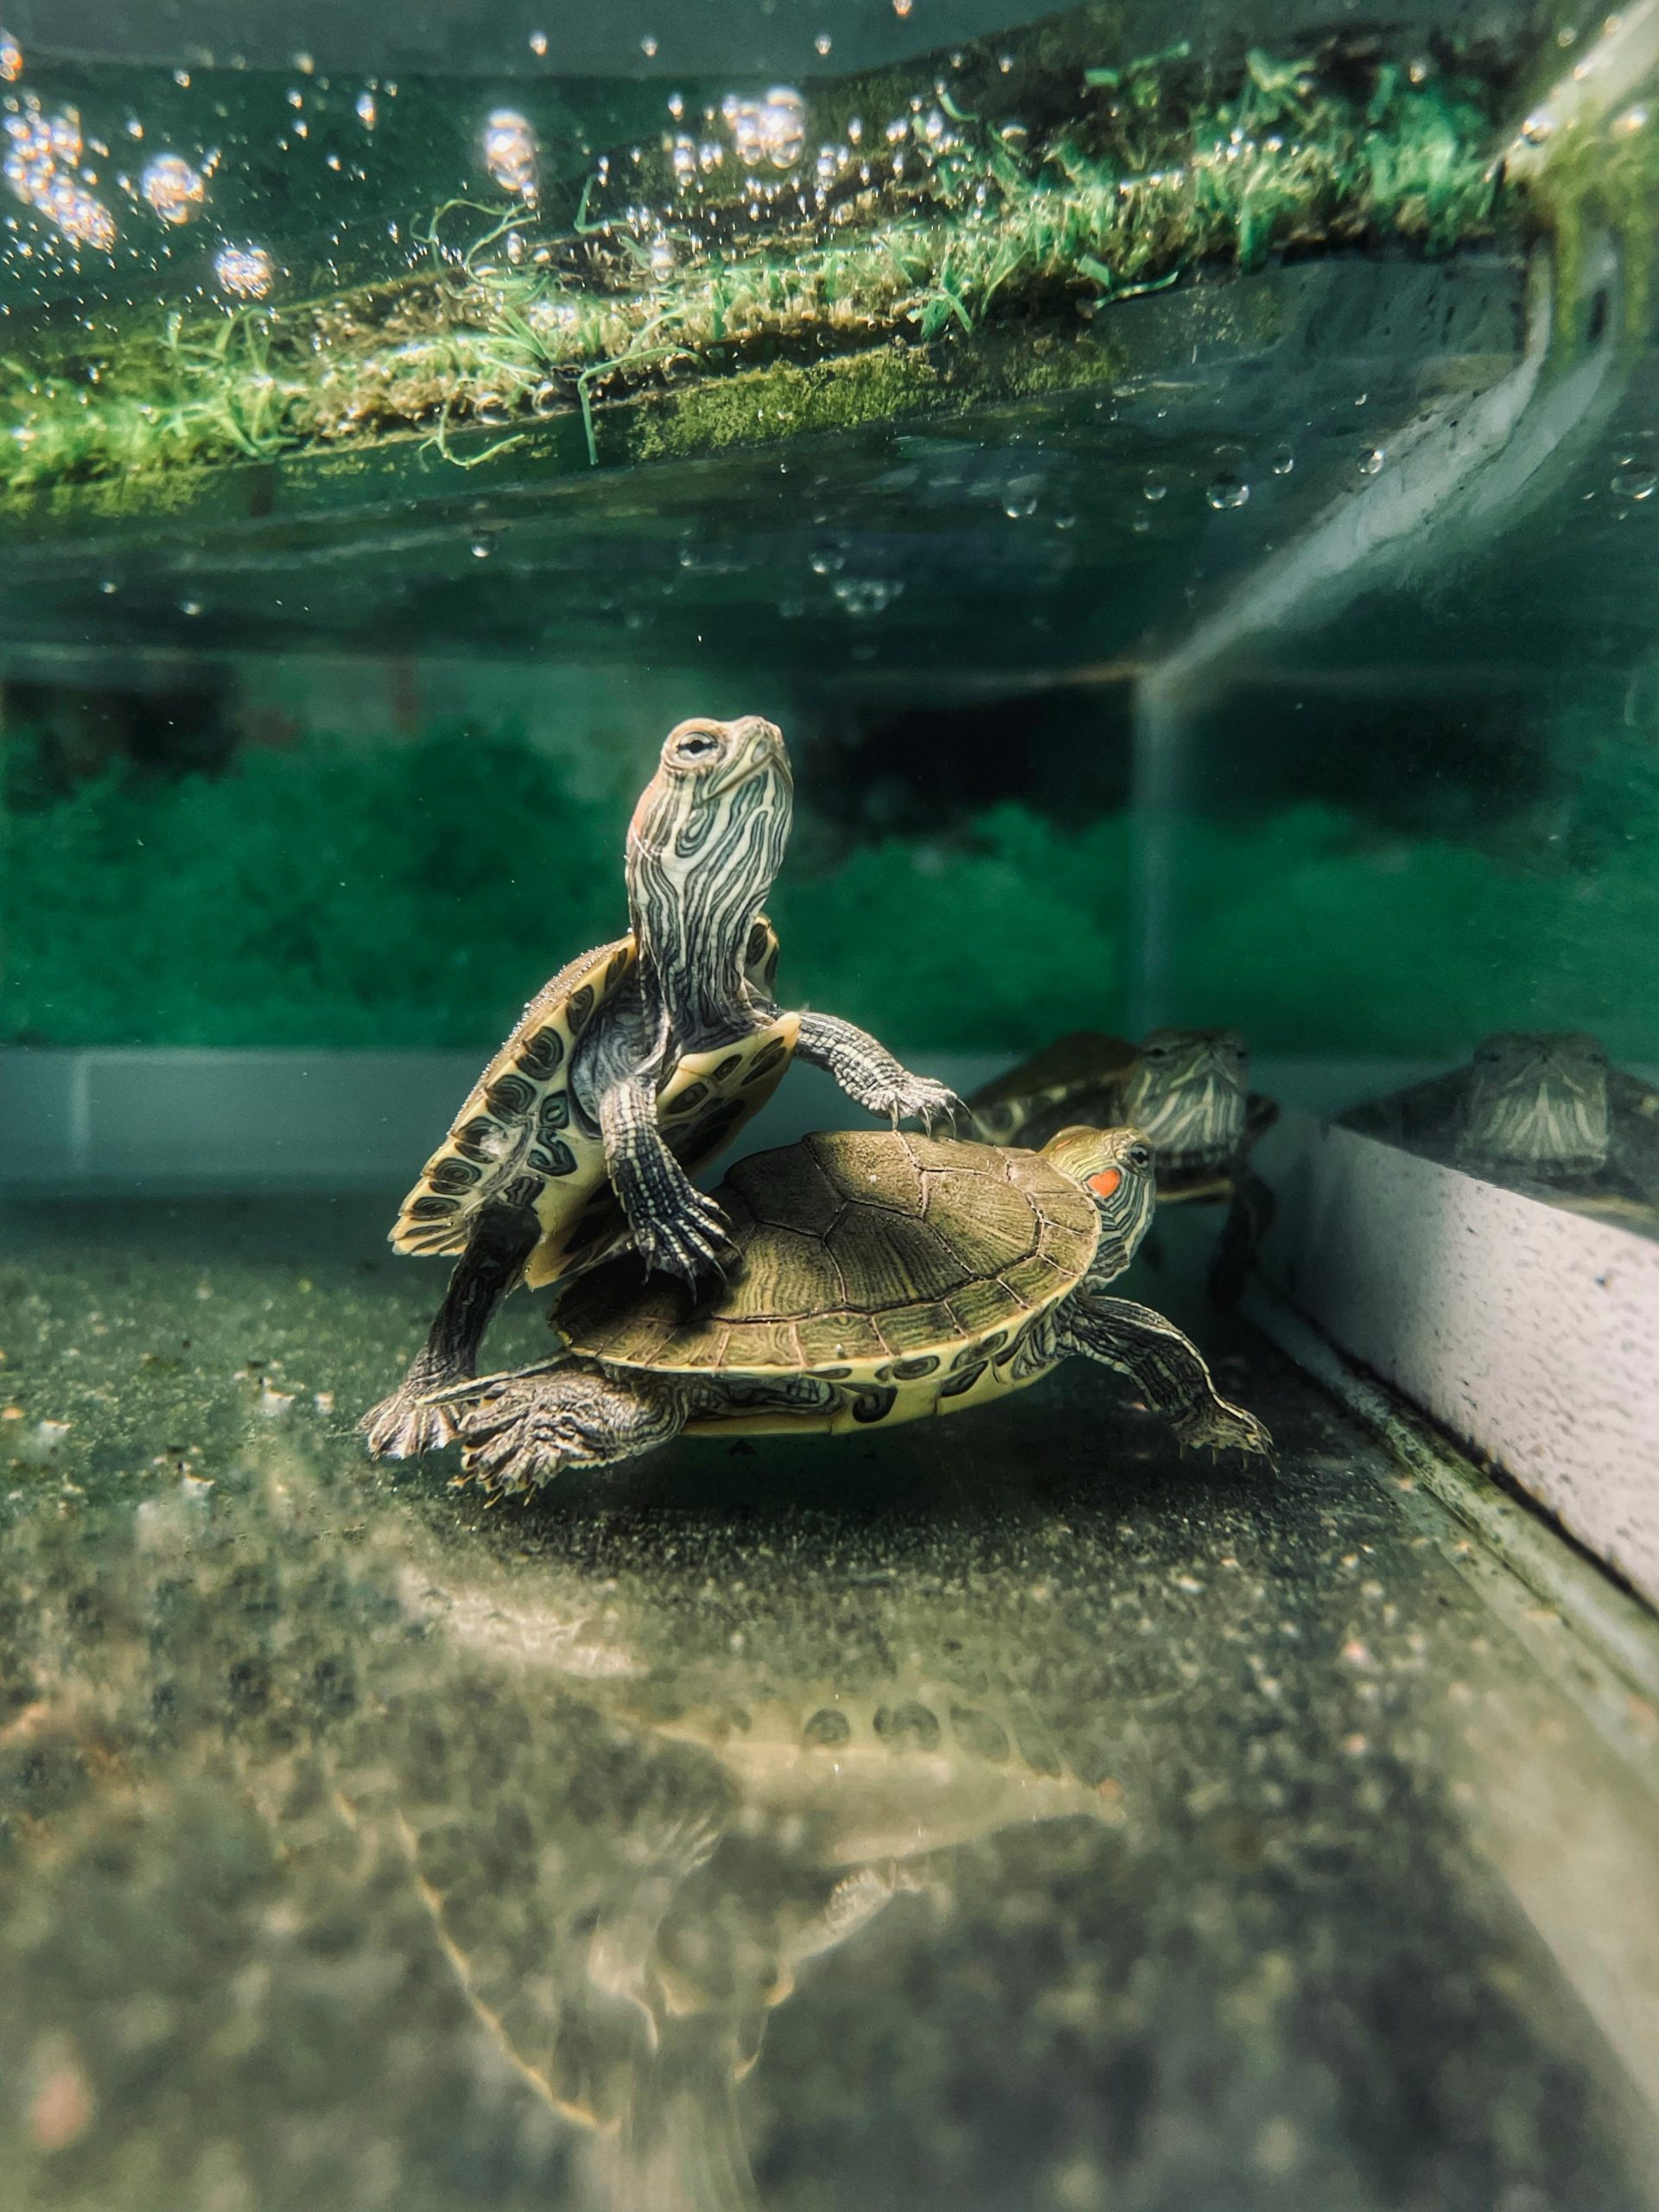 Is A Kiddie Pool Good For Turtles?